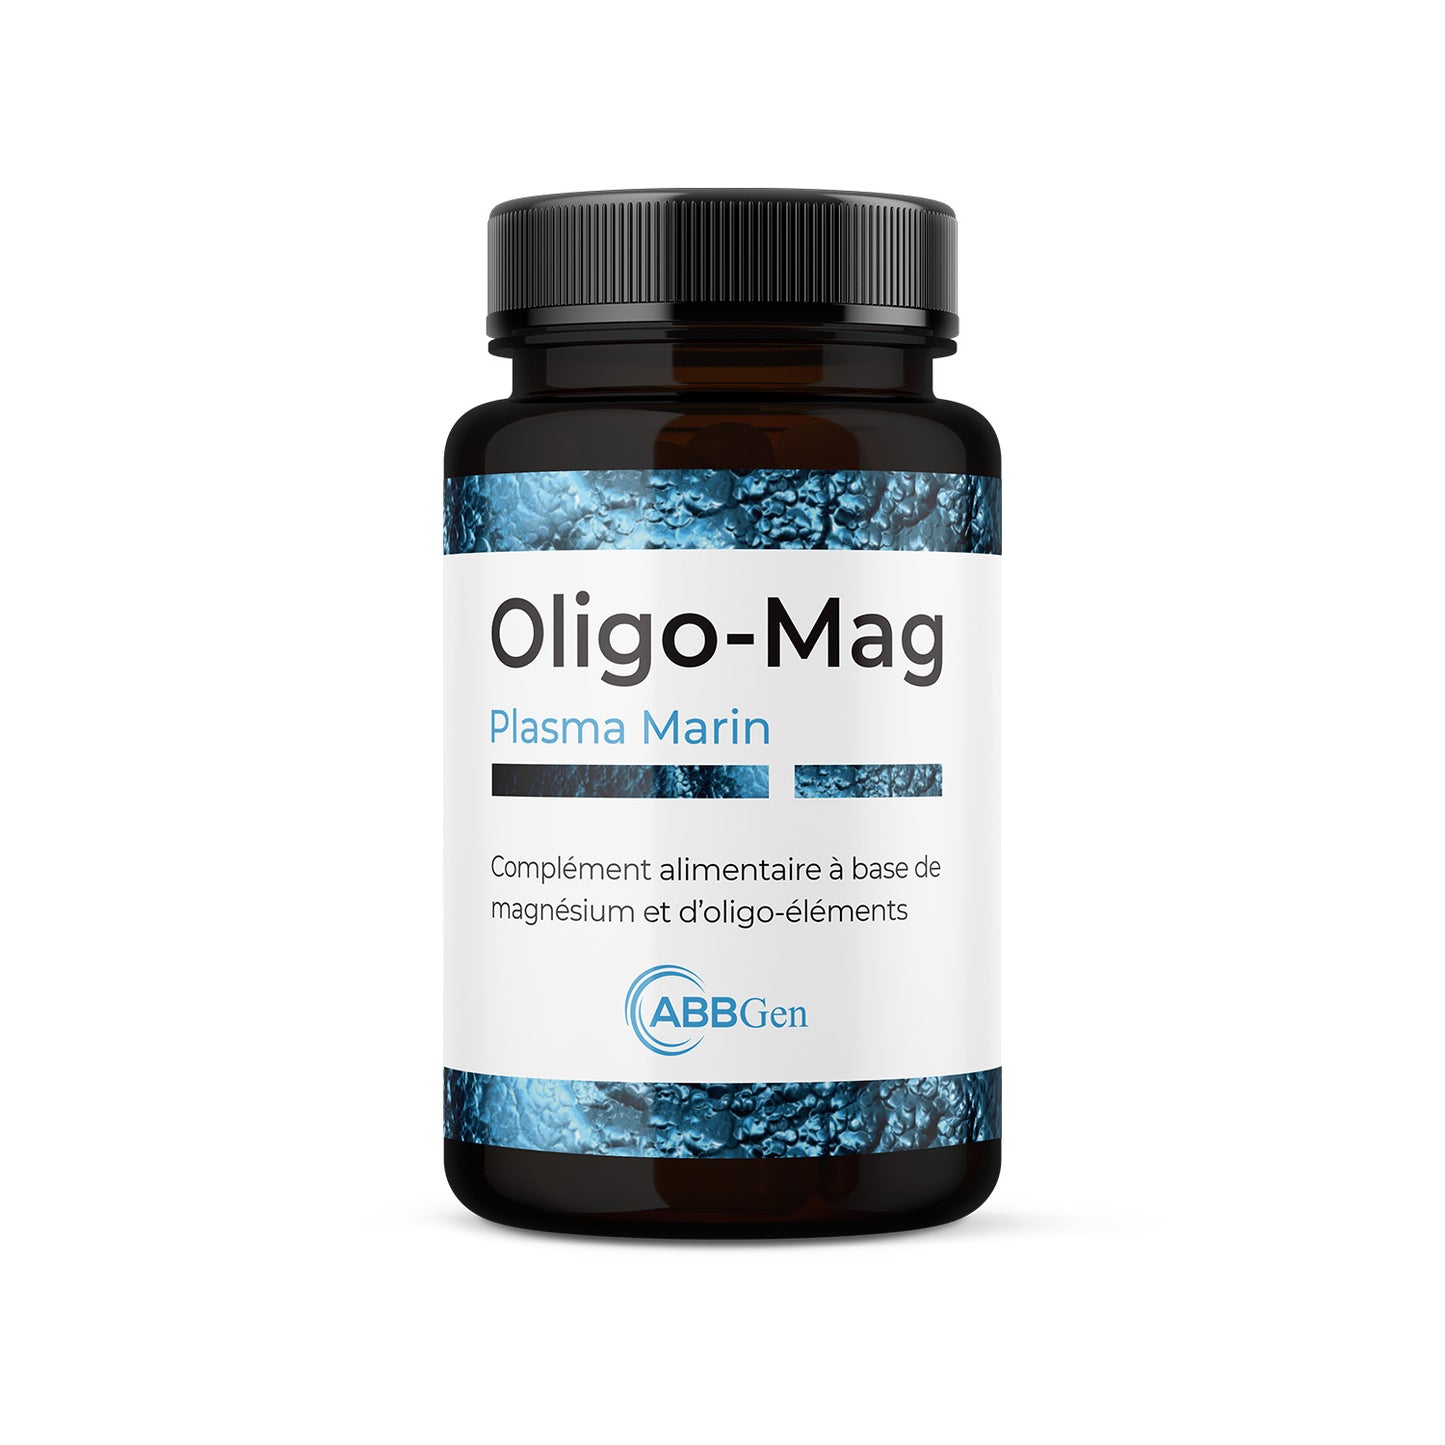 Oligo-Mag - Plasma Marin - Minéraux - Oligo-Éléments